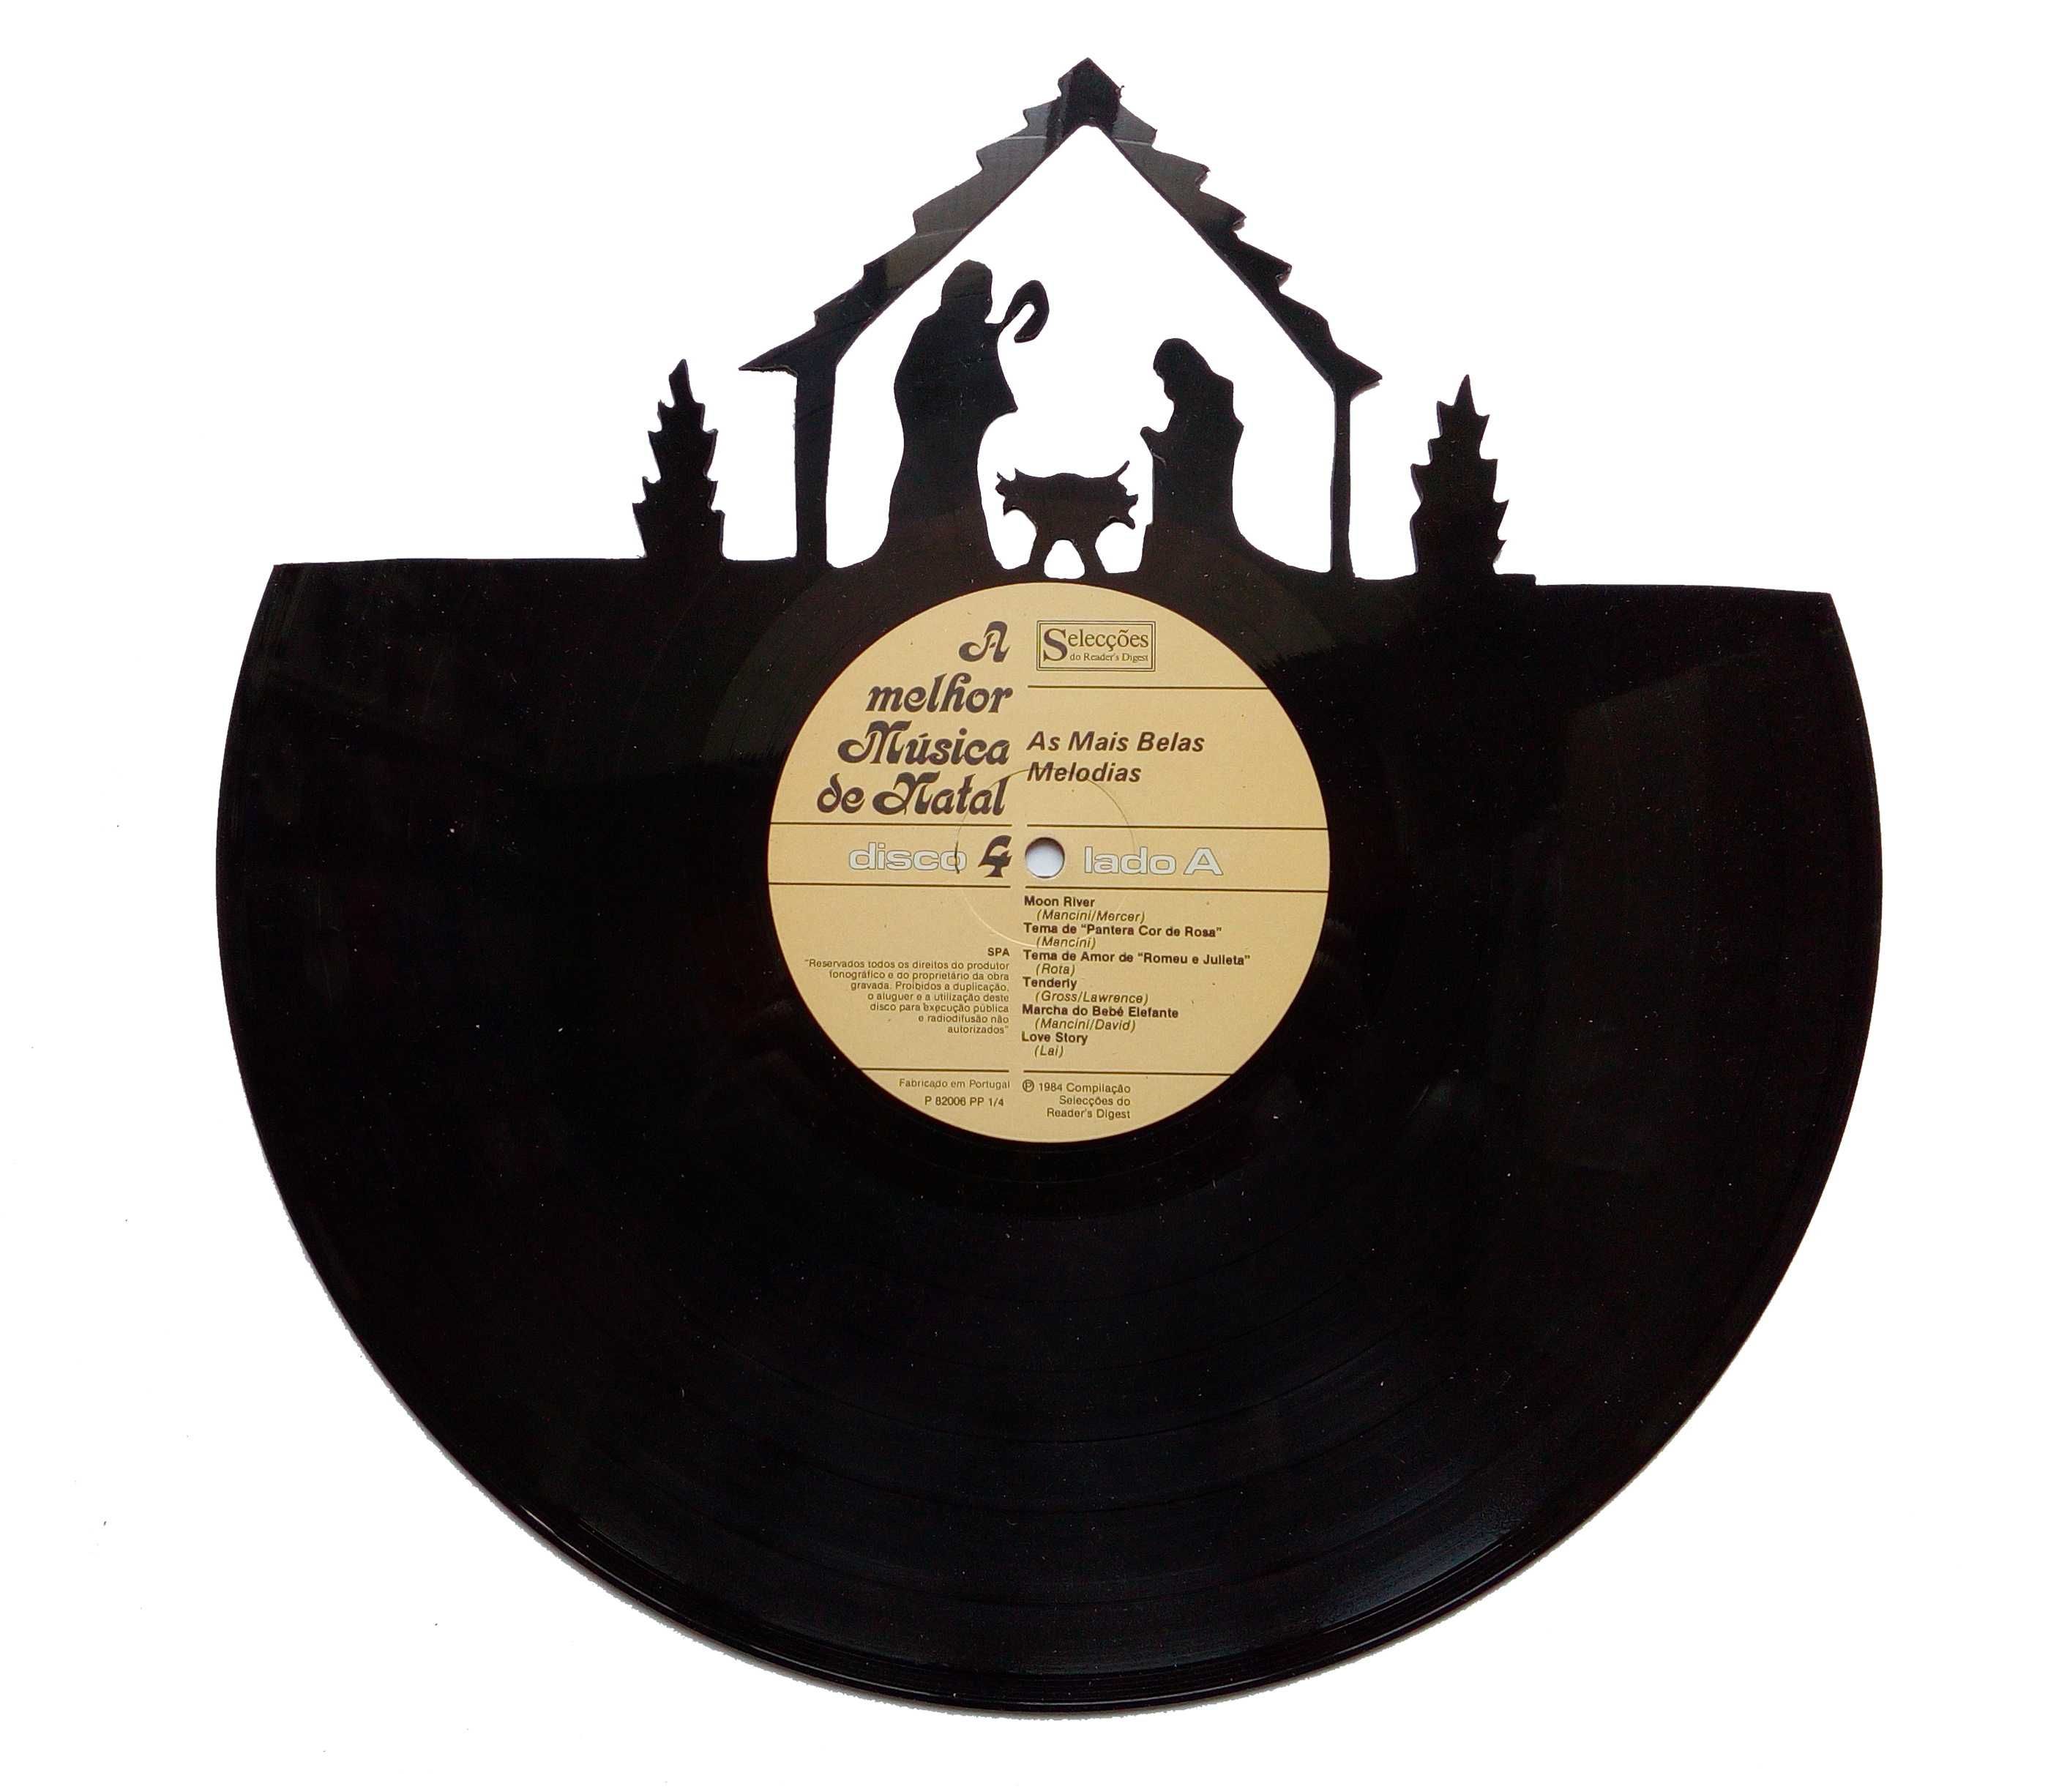 Silhueta decorativa presépio feita com um disco de vinil LP